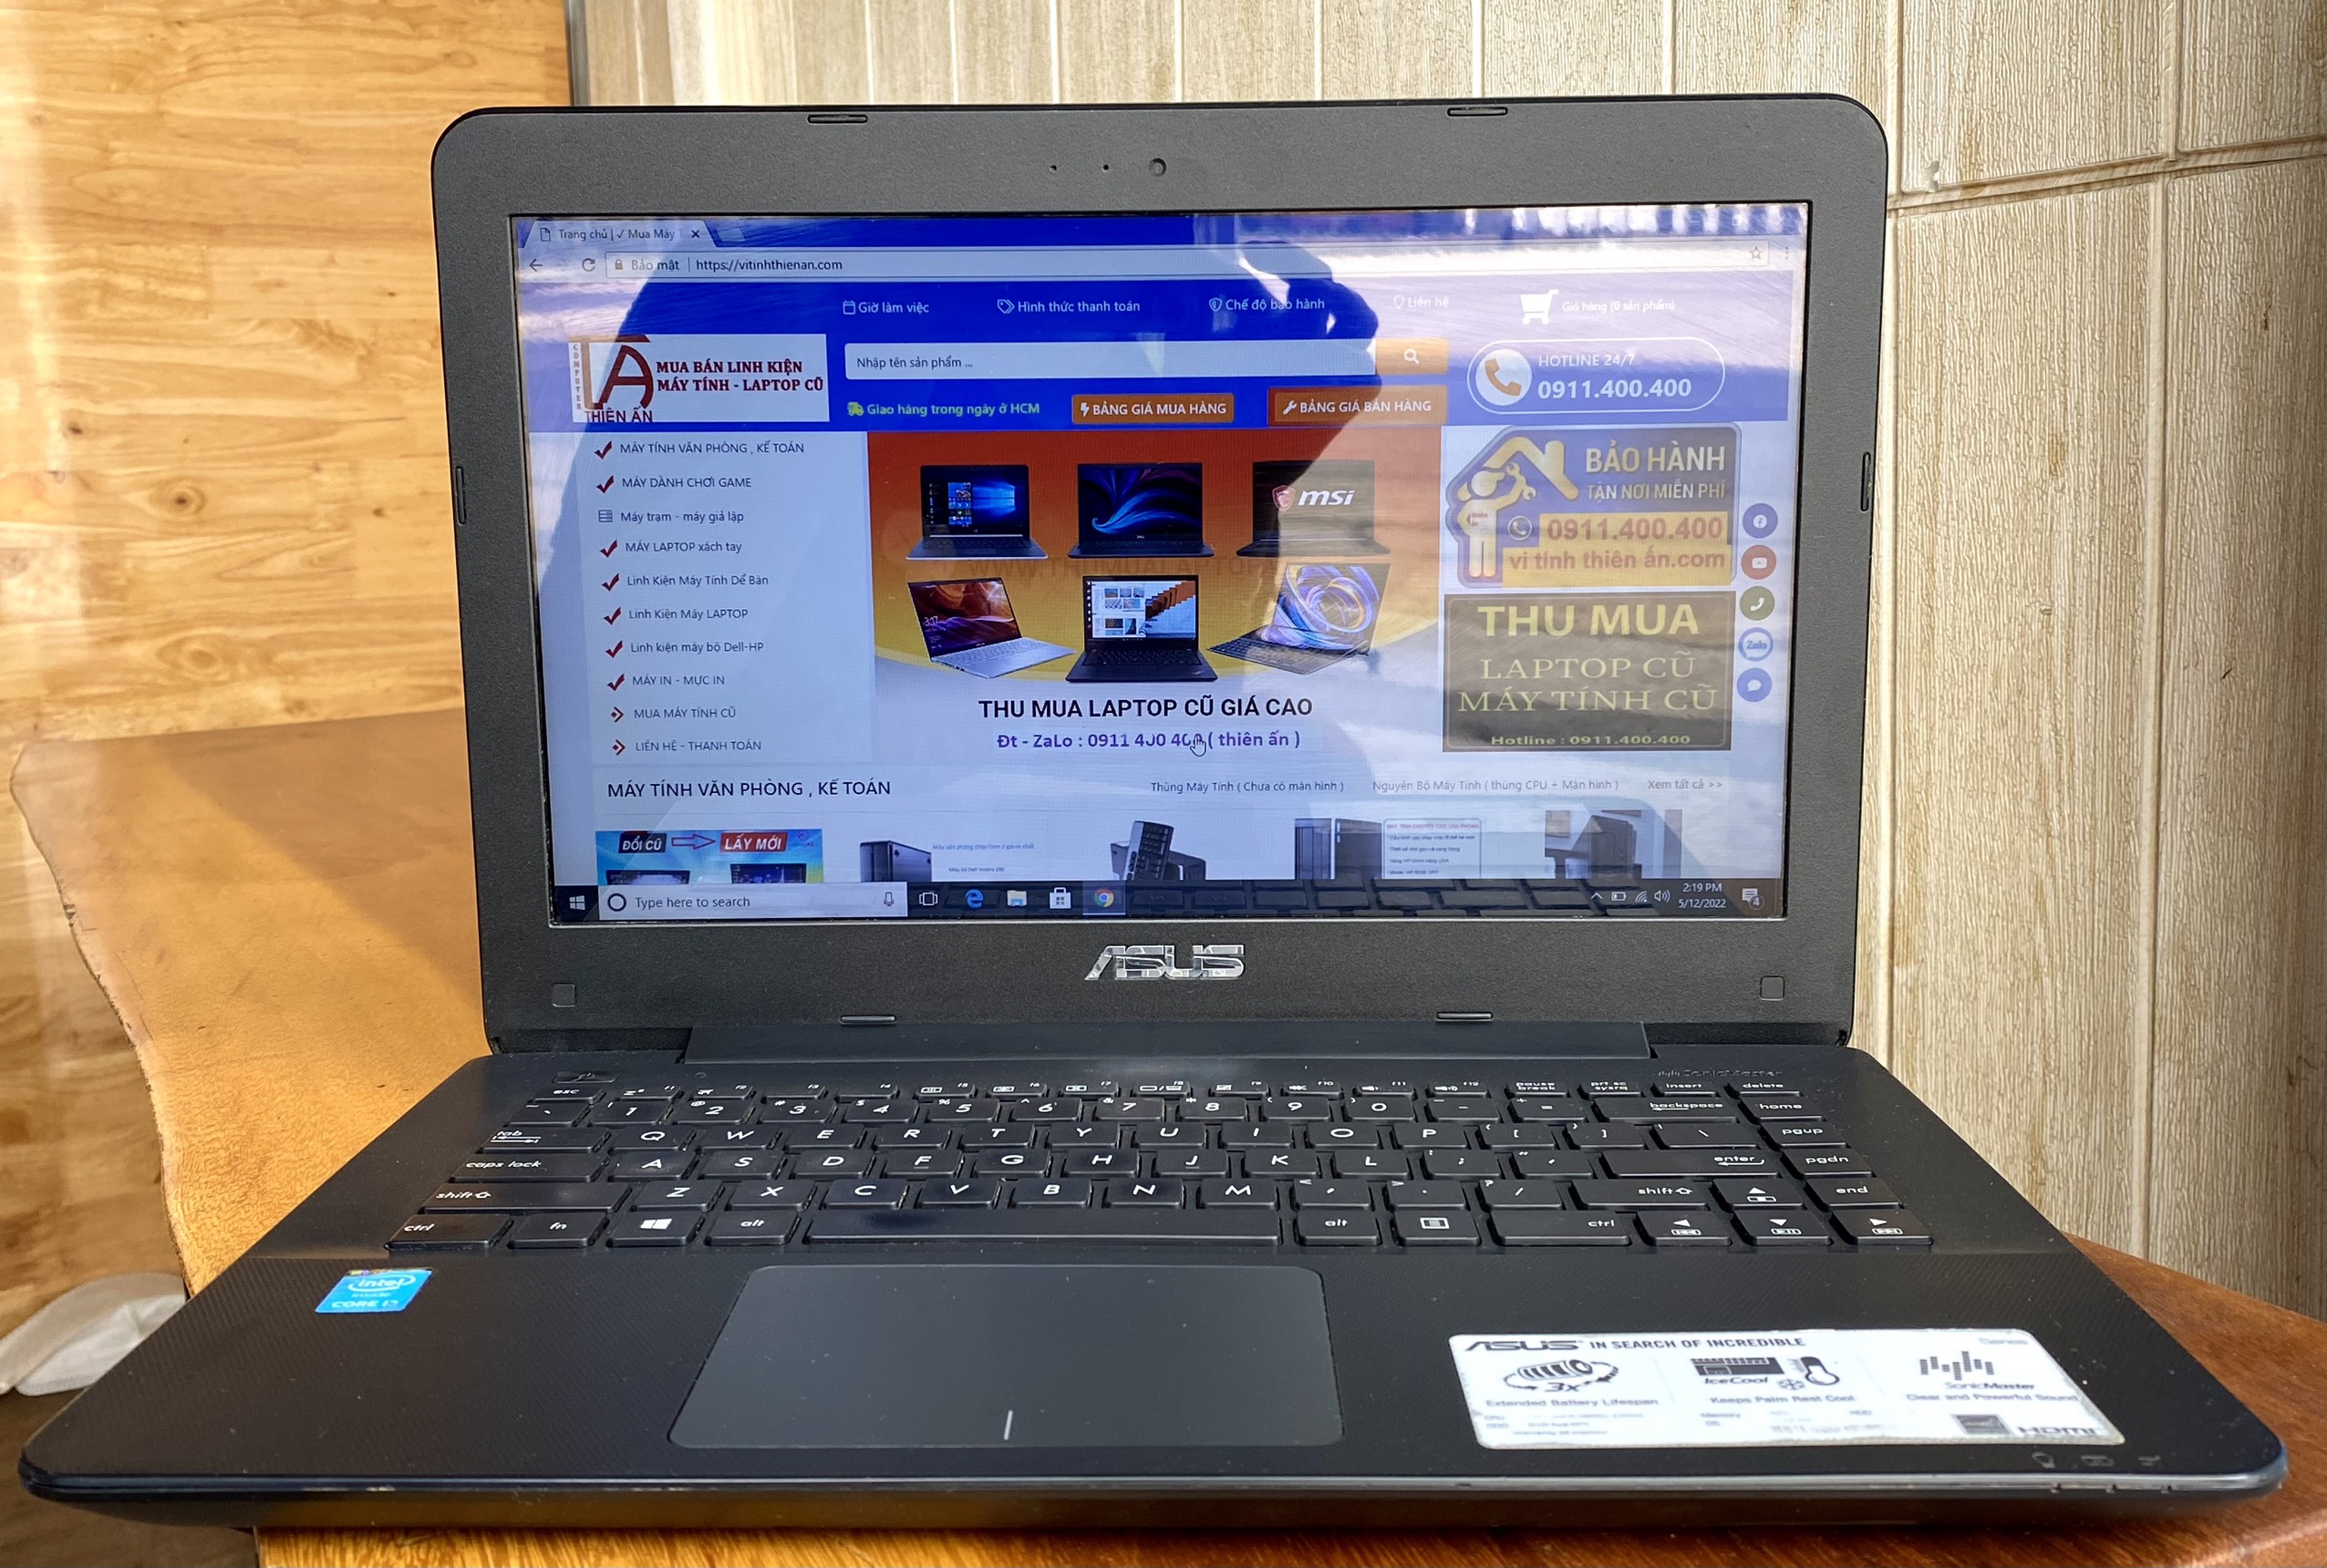 Laptop Asus X454L i3 thế hệ 5 giá rẻ